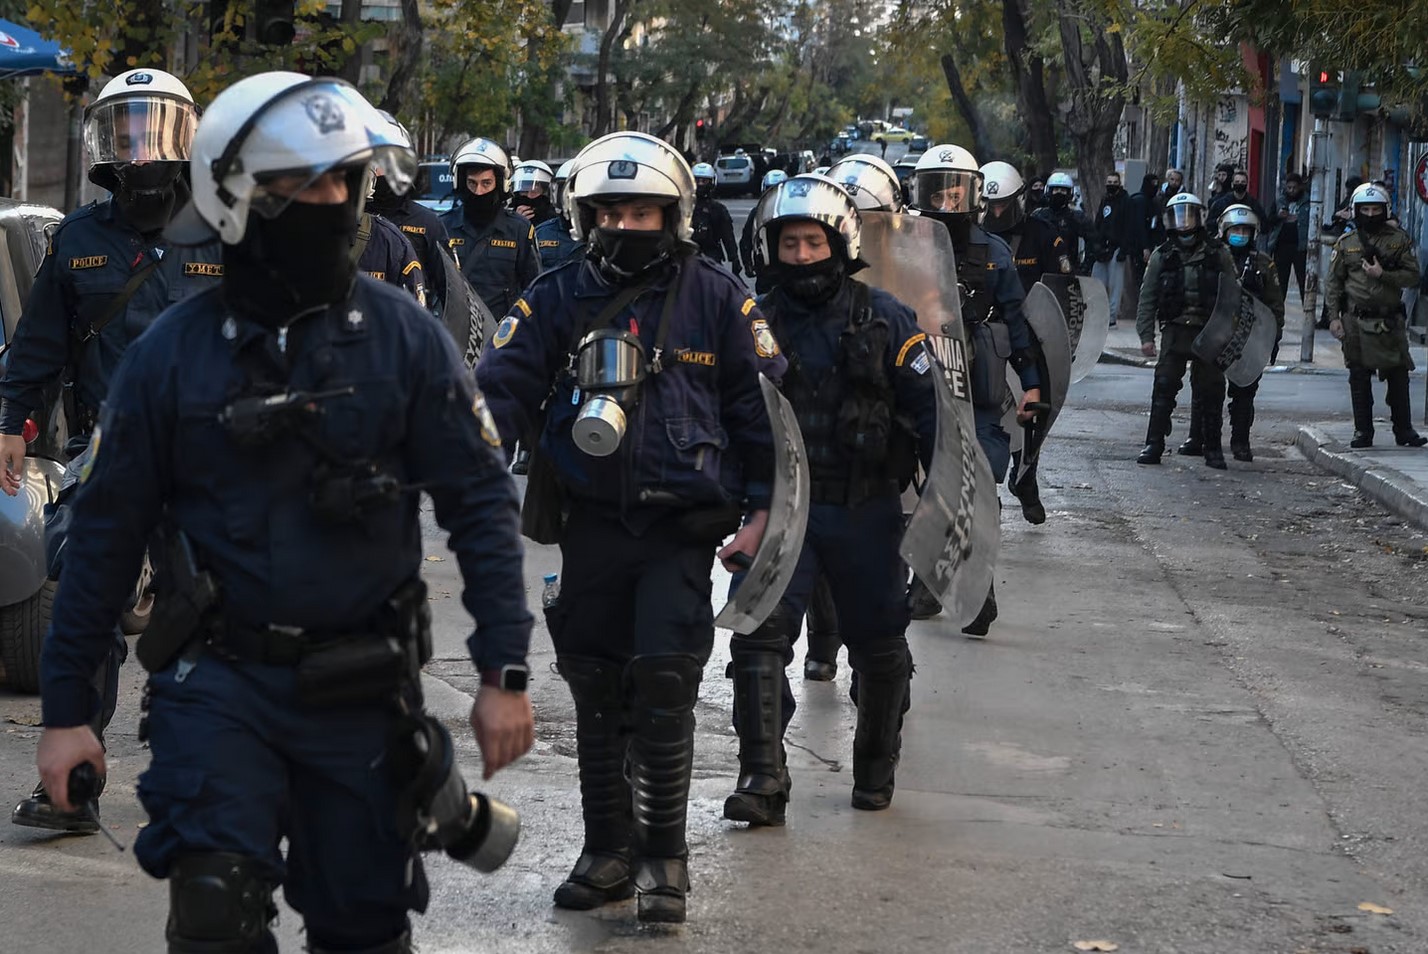 شلیک مرگبار پلیس یونان به سمت یک جوان کولی بار دیگر توجهات را متوجه موضوع خشونت پلیس در یونان کرد.